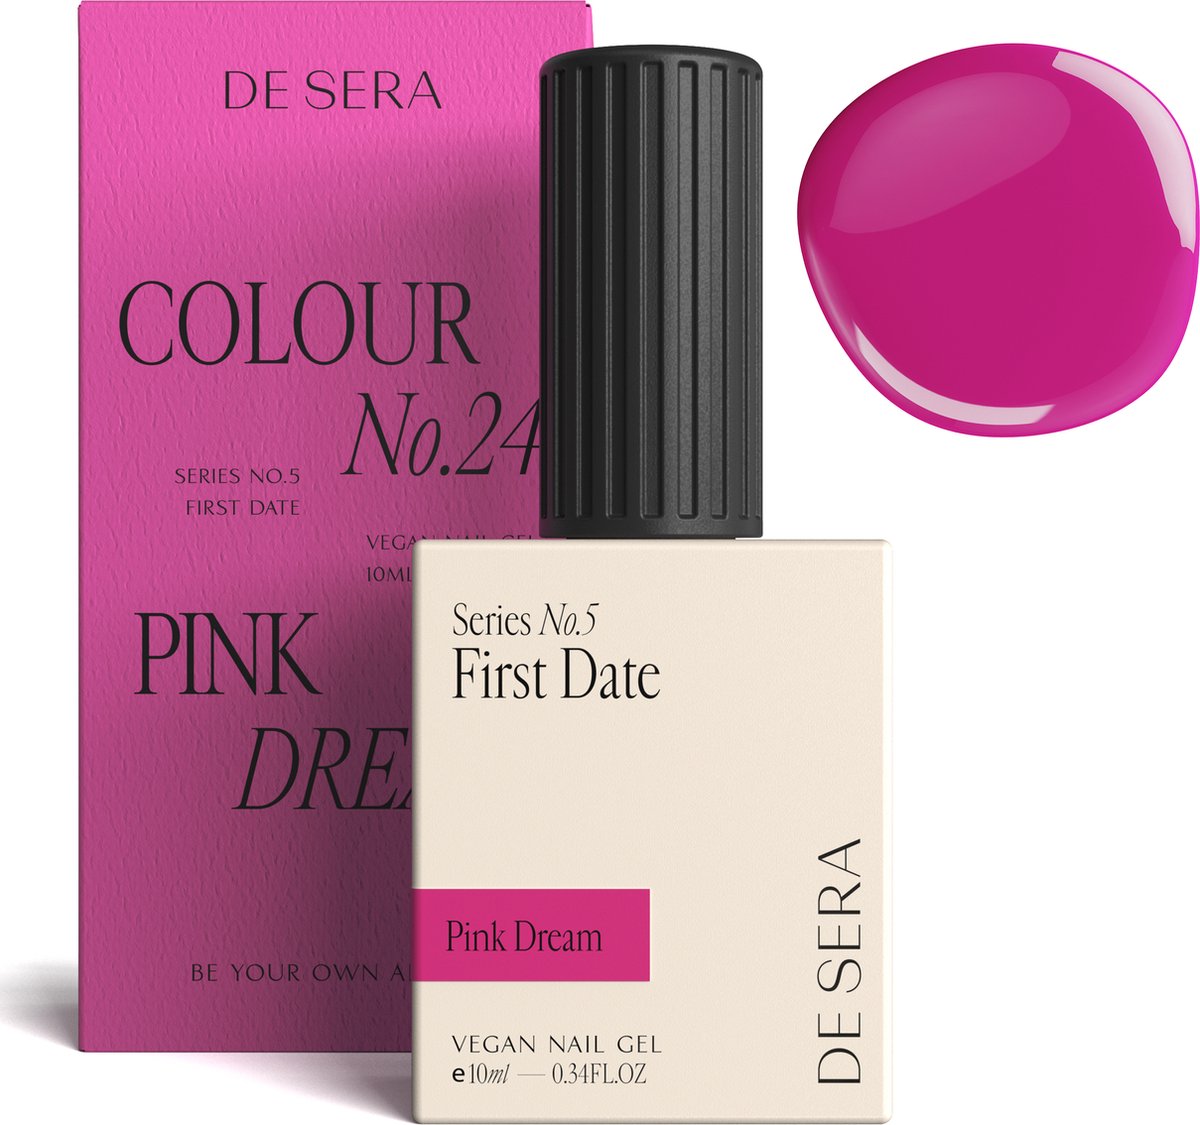 De Sera Gellak - Roze Gel Nagellak - 10ML - Colour No. 24 Pink Dream